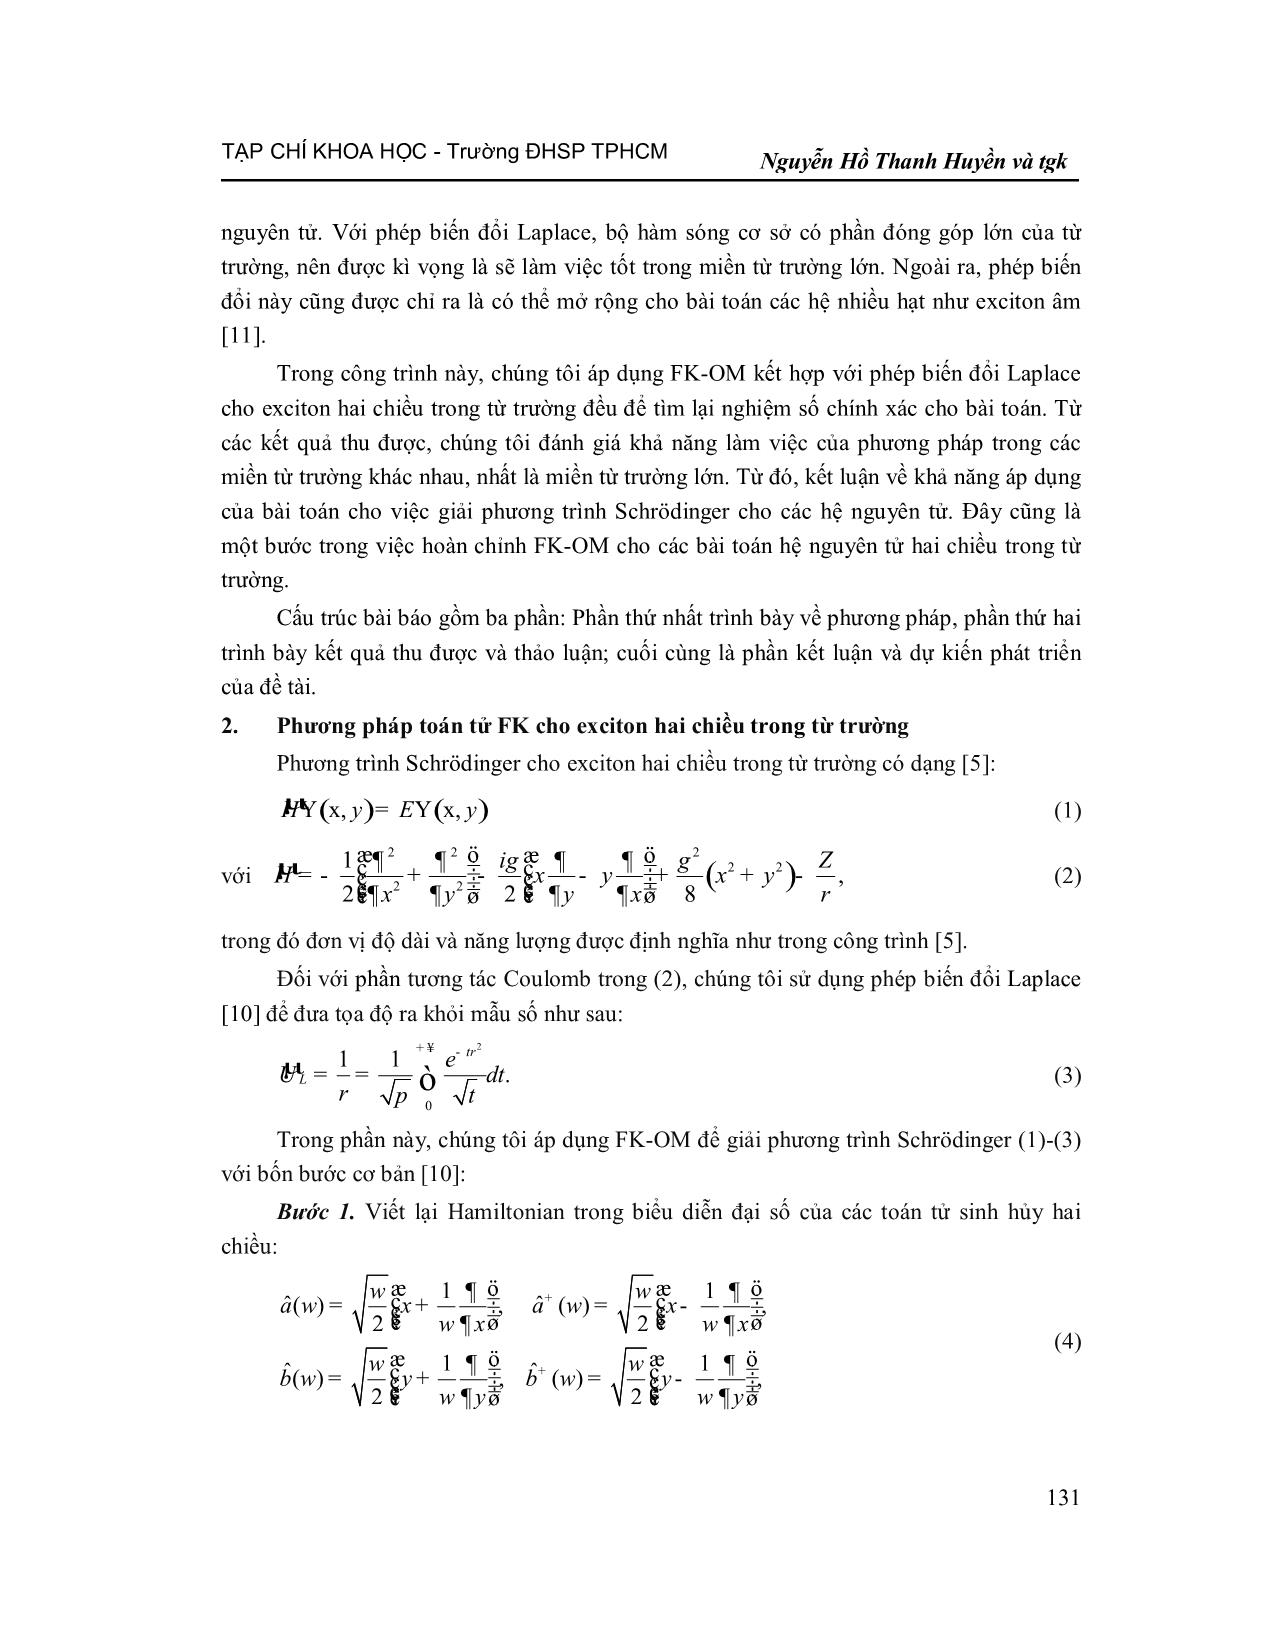 Phương pháp toán tử FK cải tiến giải phương trình Schrödinger cho Exciton hai chiều trong từ trường đều trang 3